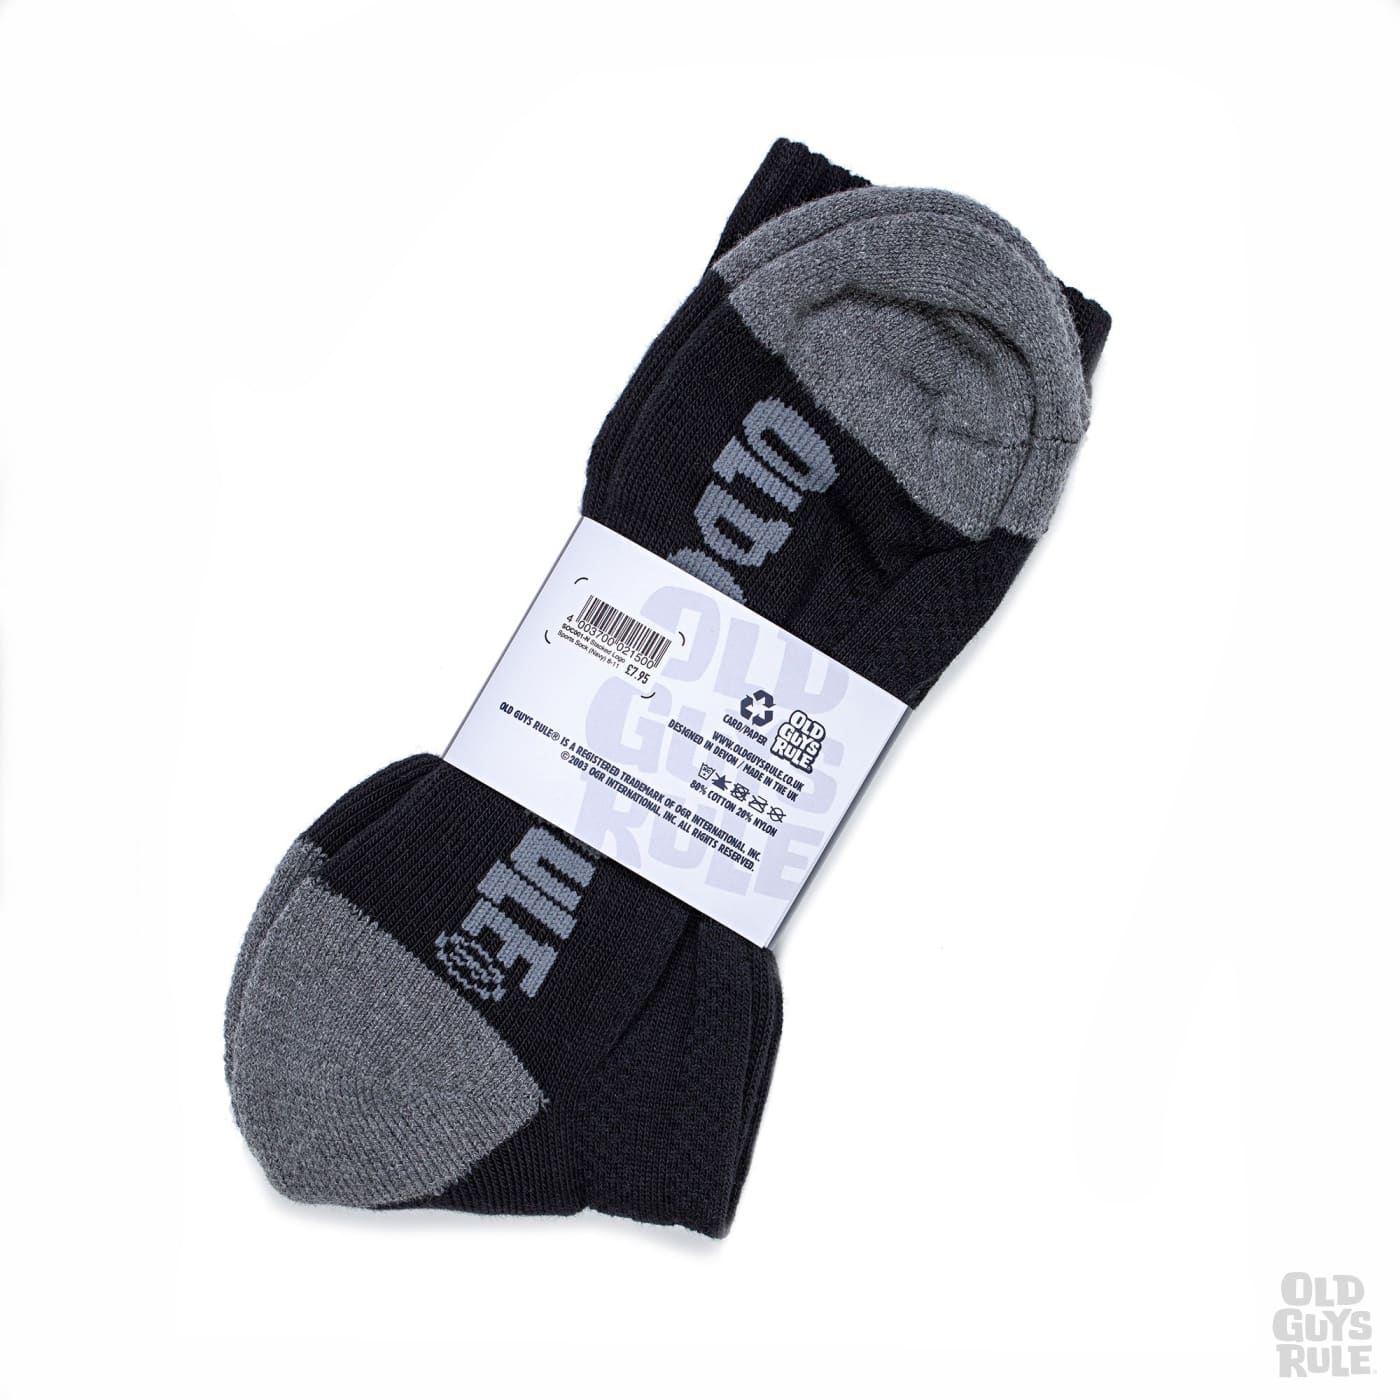 Alignment-socks.co.uk